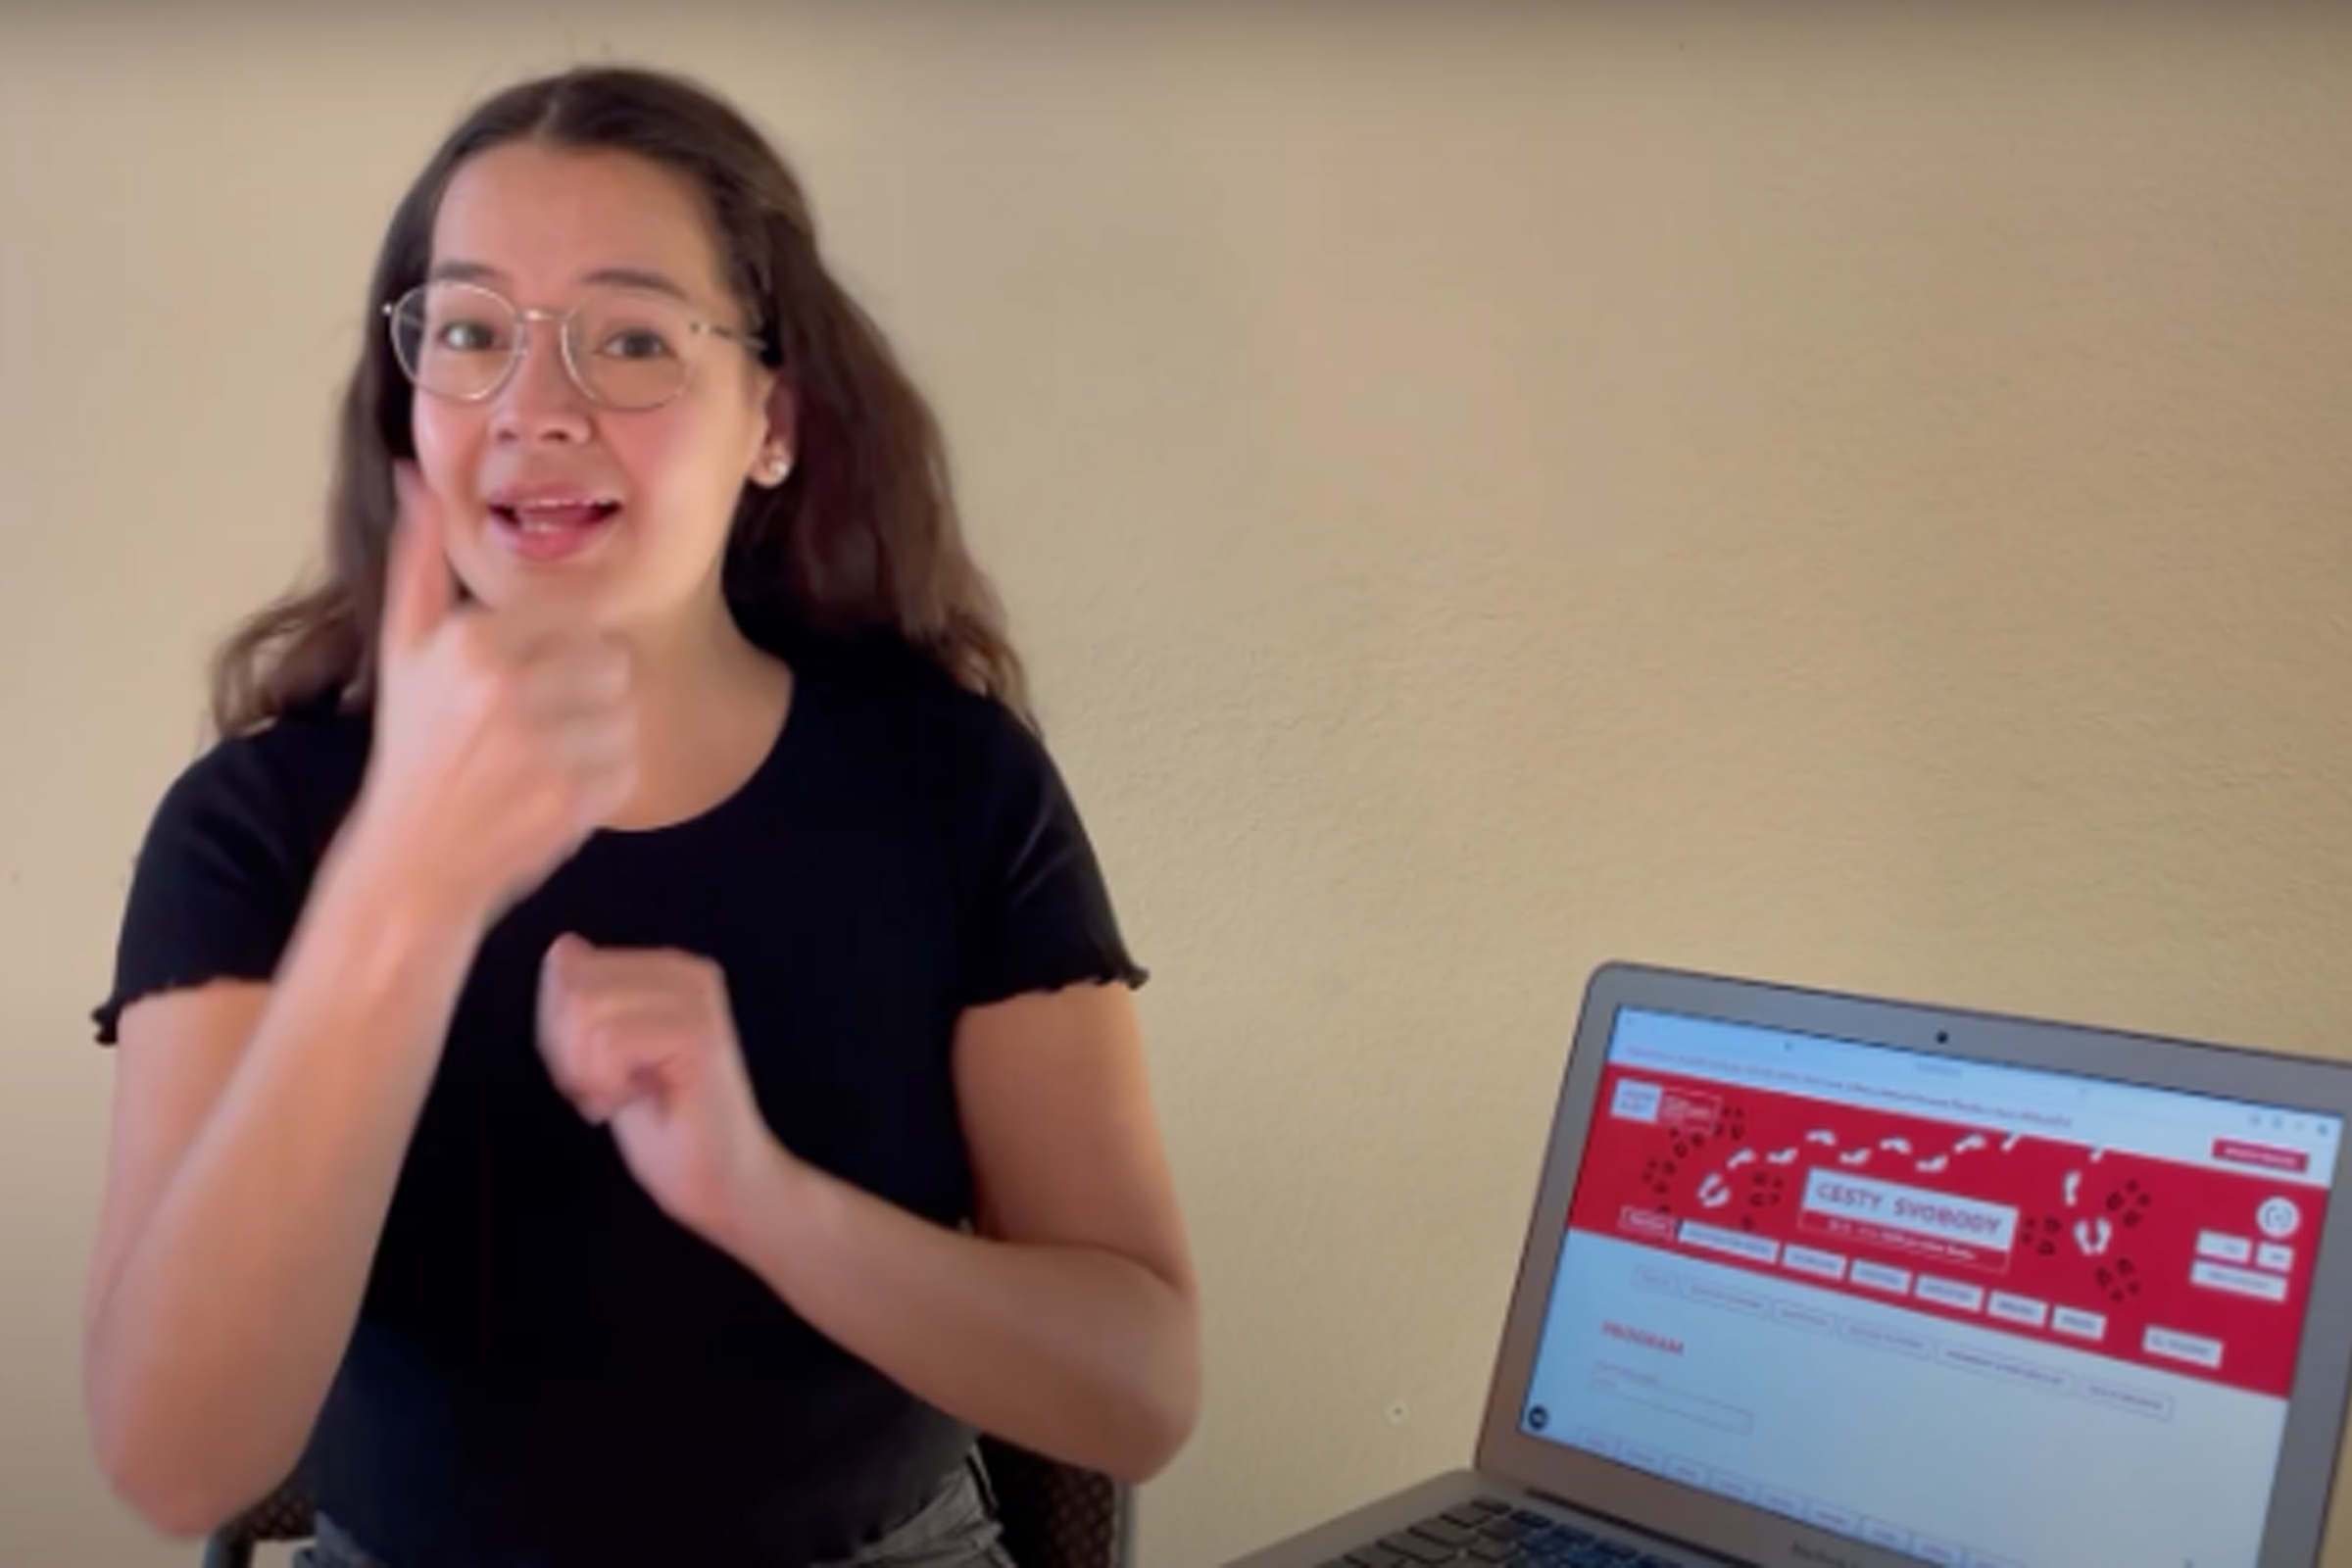 Žena vysvětluje znakovým jazykem, kde lze na webových stránkách nají informace o programu festivalu. Vedle sebe má na stole otevřený počítač s otevřenými stránkami.